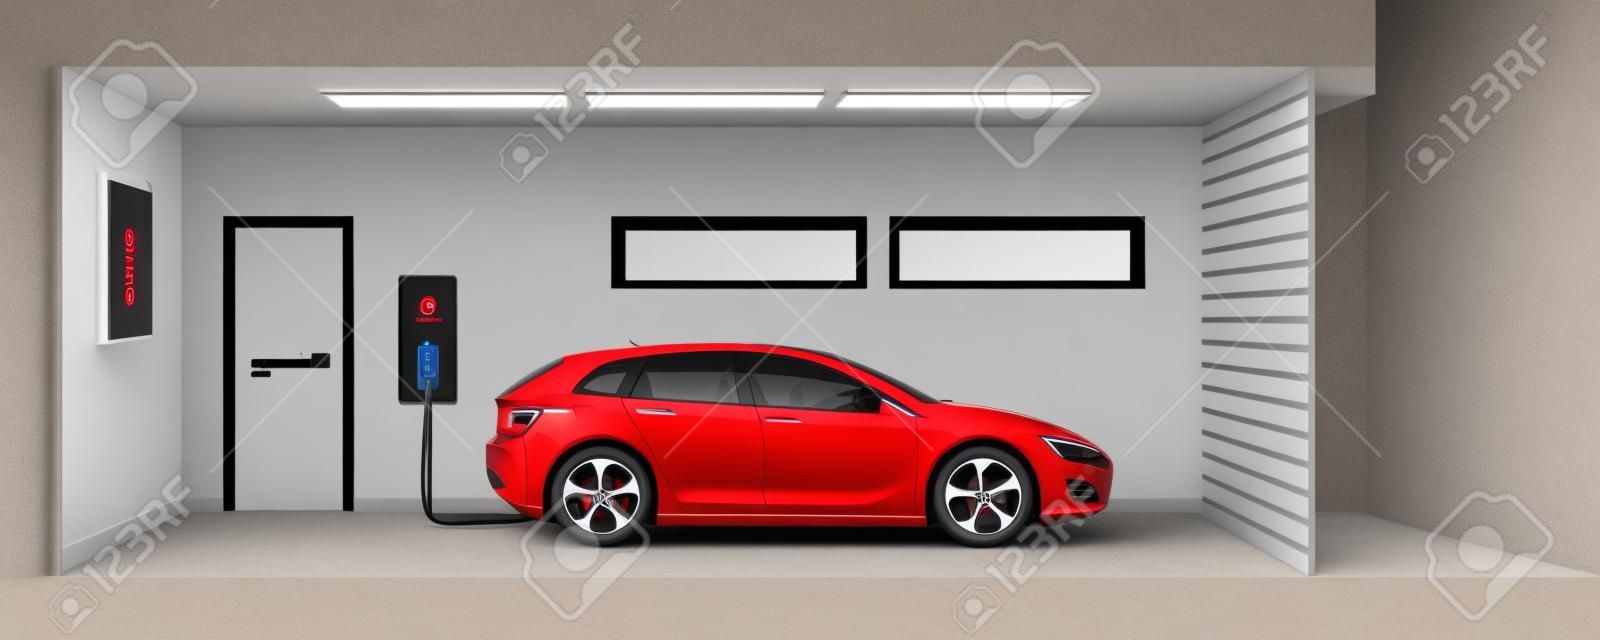 illustration plat d'une voiture électrique rouge de charge au point de station de chargement à l'intérieur de la maison garage. électromobilité intérieur concept d'e-motion intelligente intégrée.